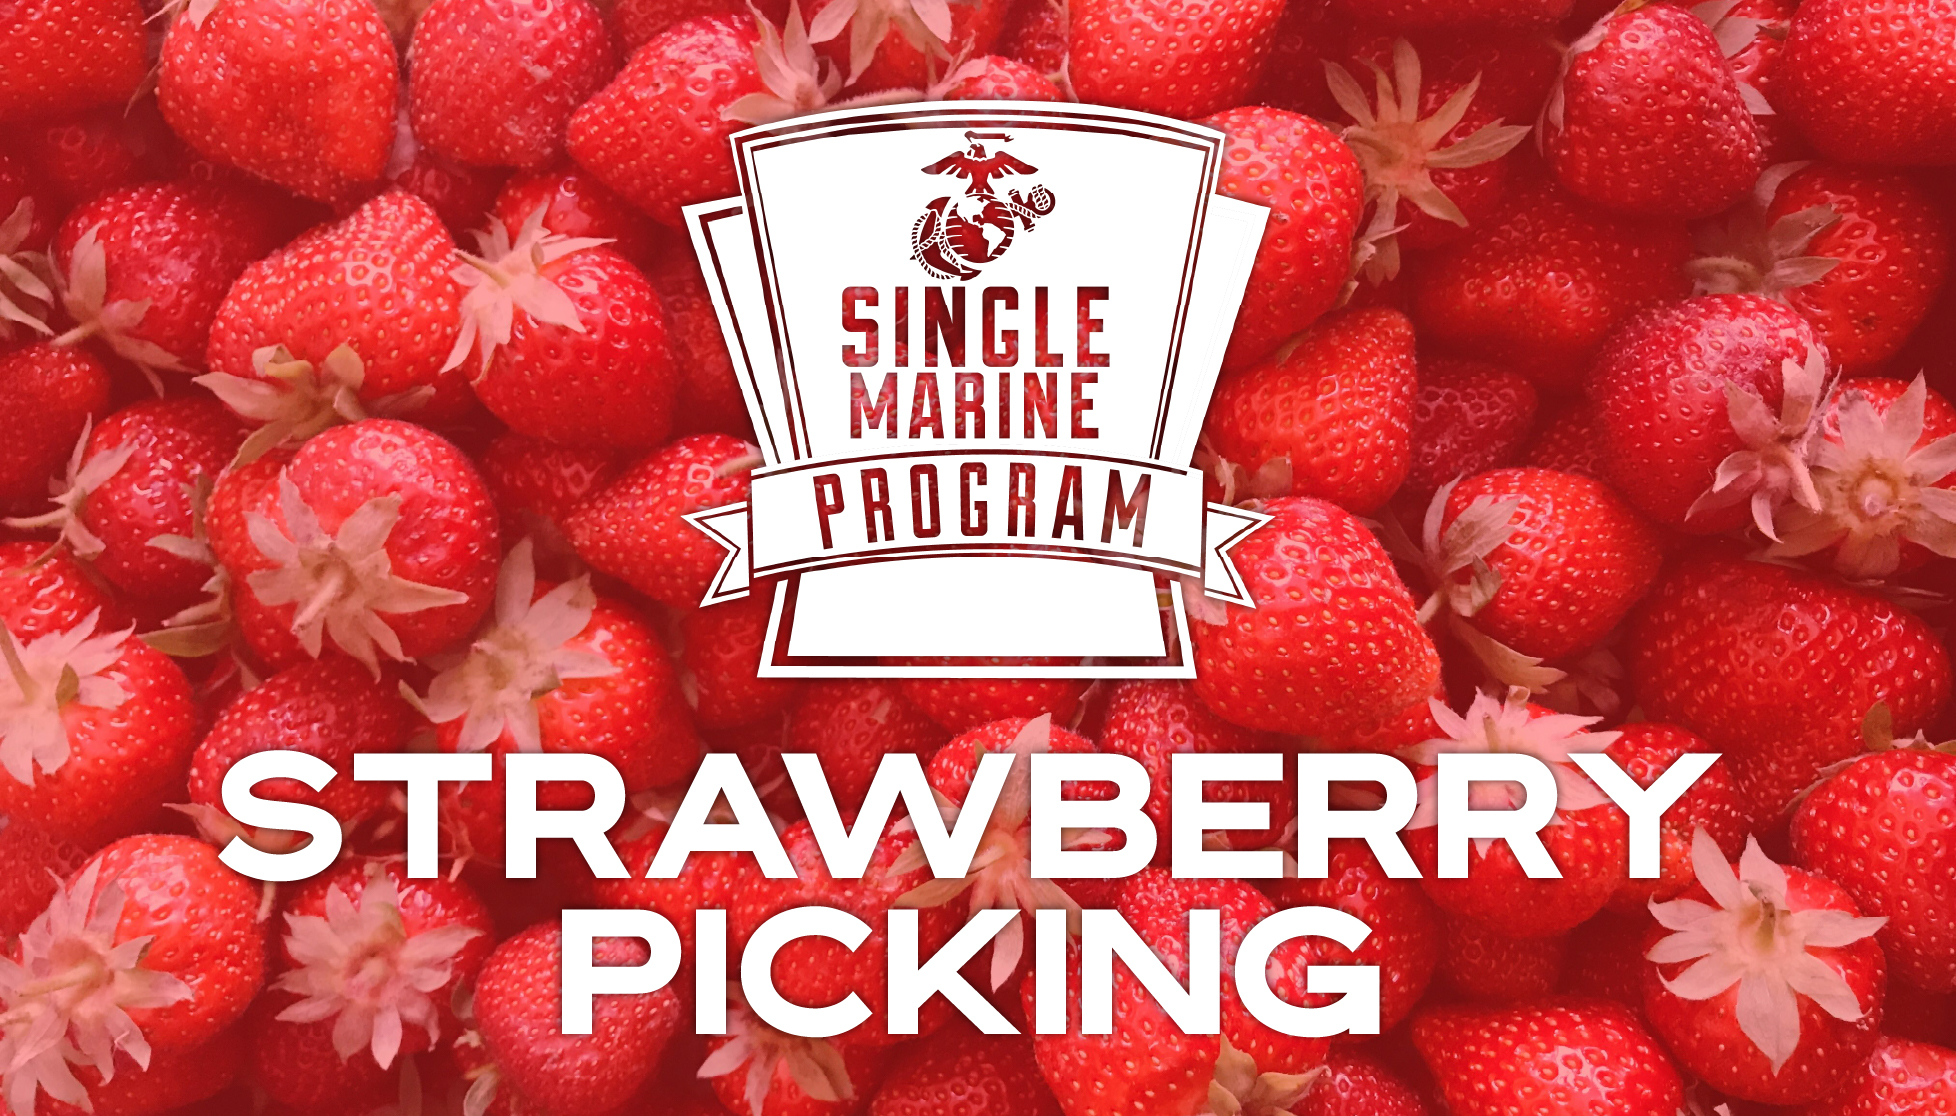 White's Farm Strawberry Picking